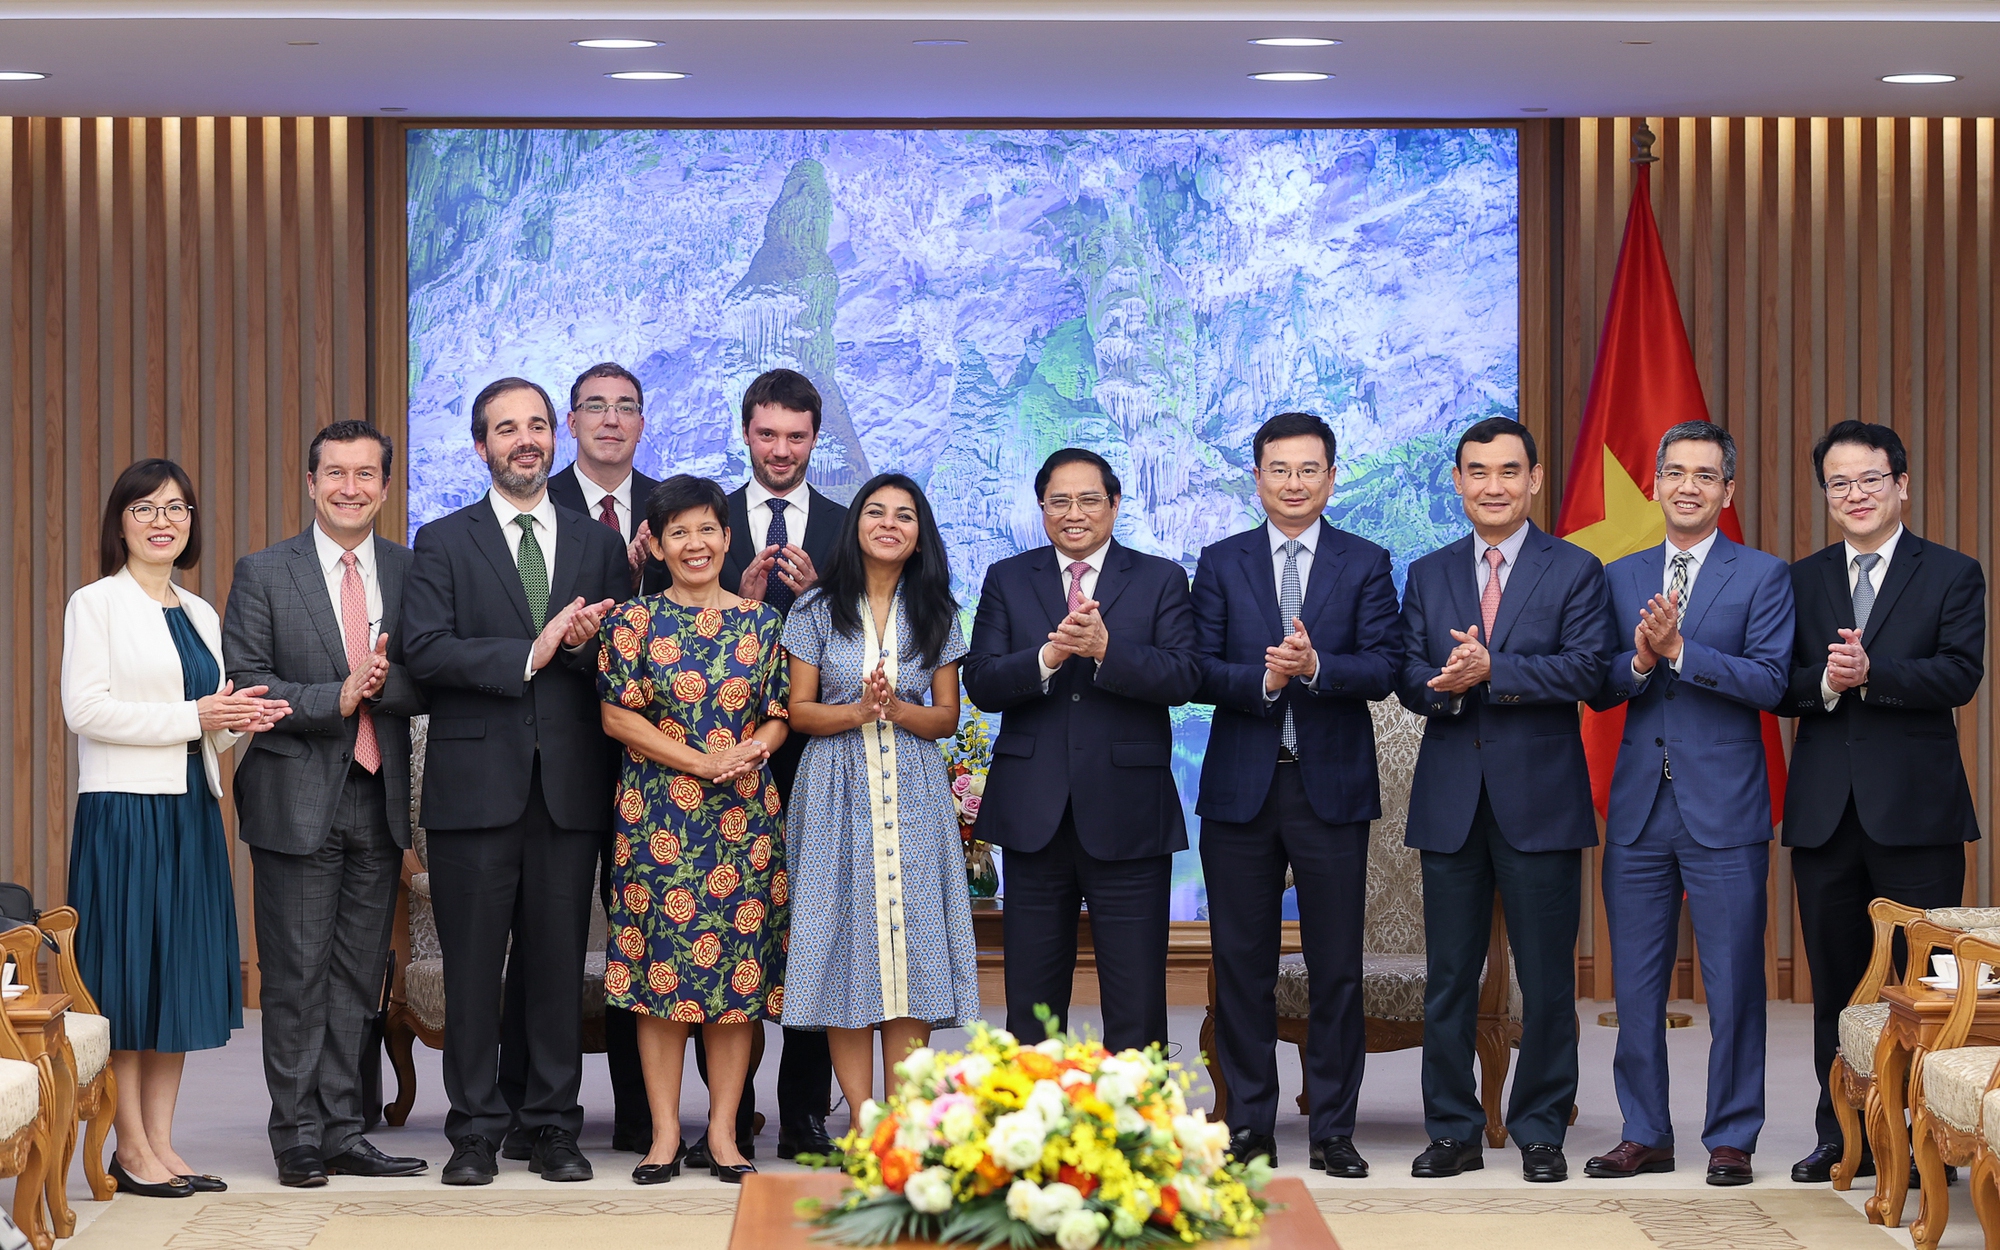 Quỹ Tiền tệ quốc tế: Các nhà đầu tư tin tưởng vào Việt Nam